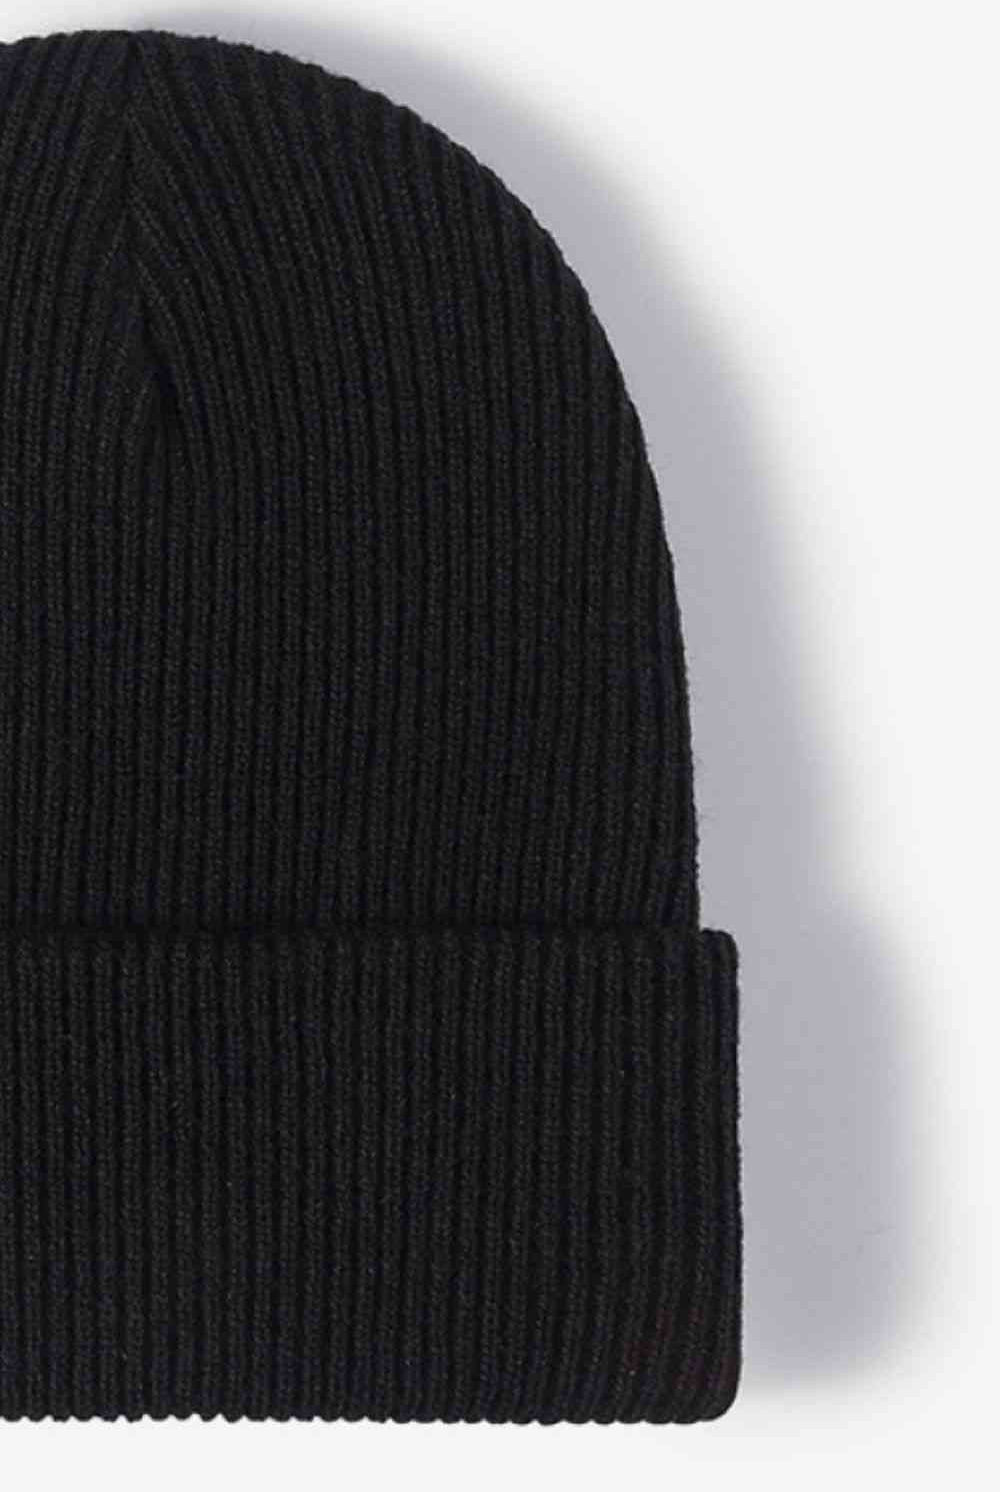 Black Warm Winter Knit Beanie Winter Accessories